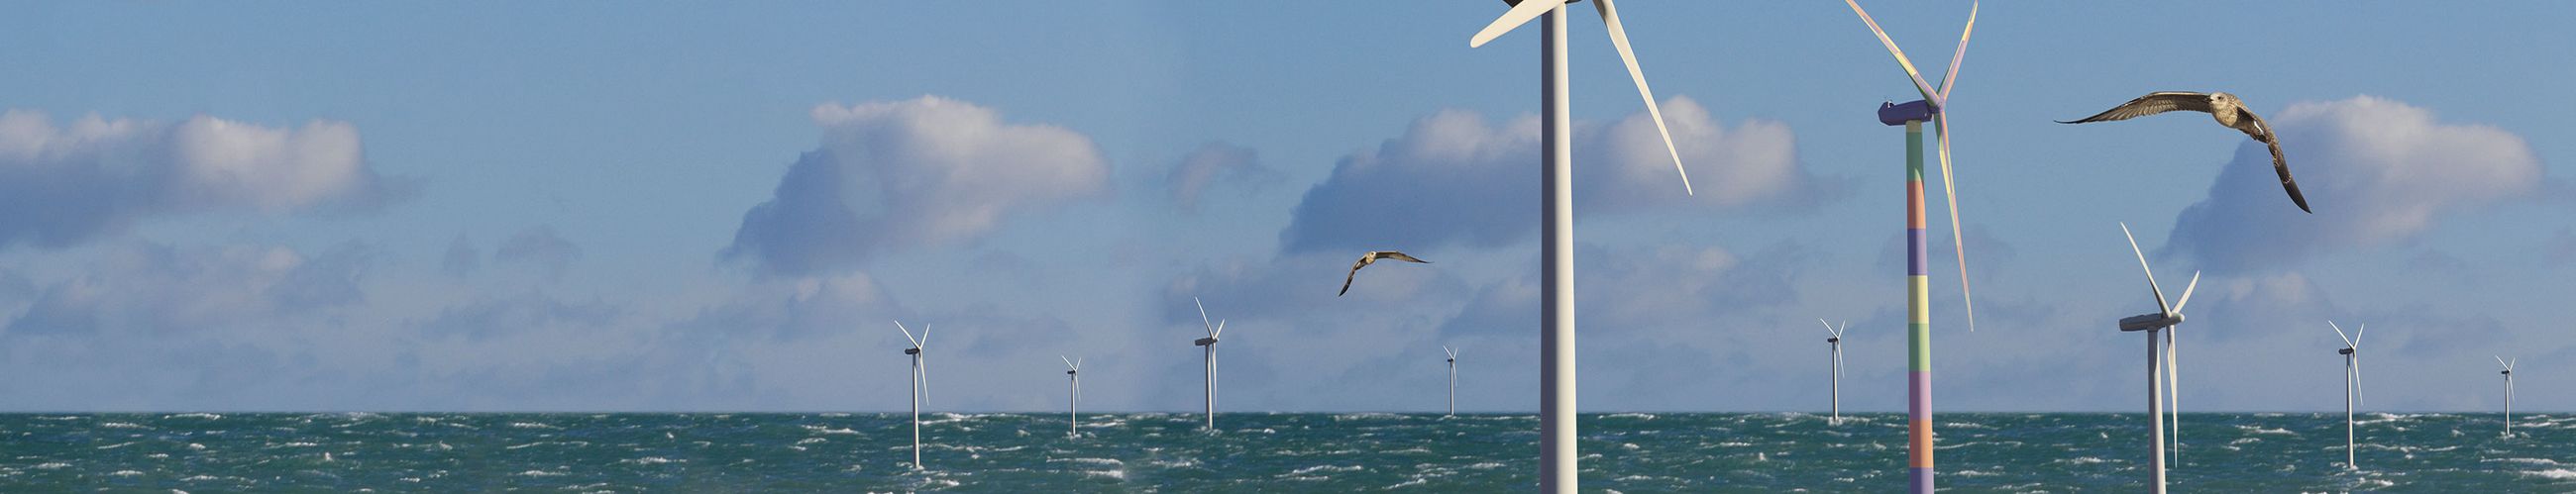 Das Bild zeigt eine Windkraftanlage auf dem Meer, zwei Vögel fligen zwischen den Windrädern.